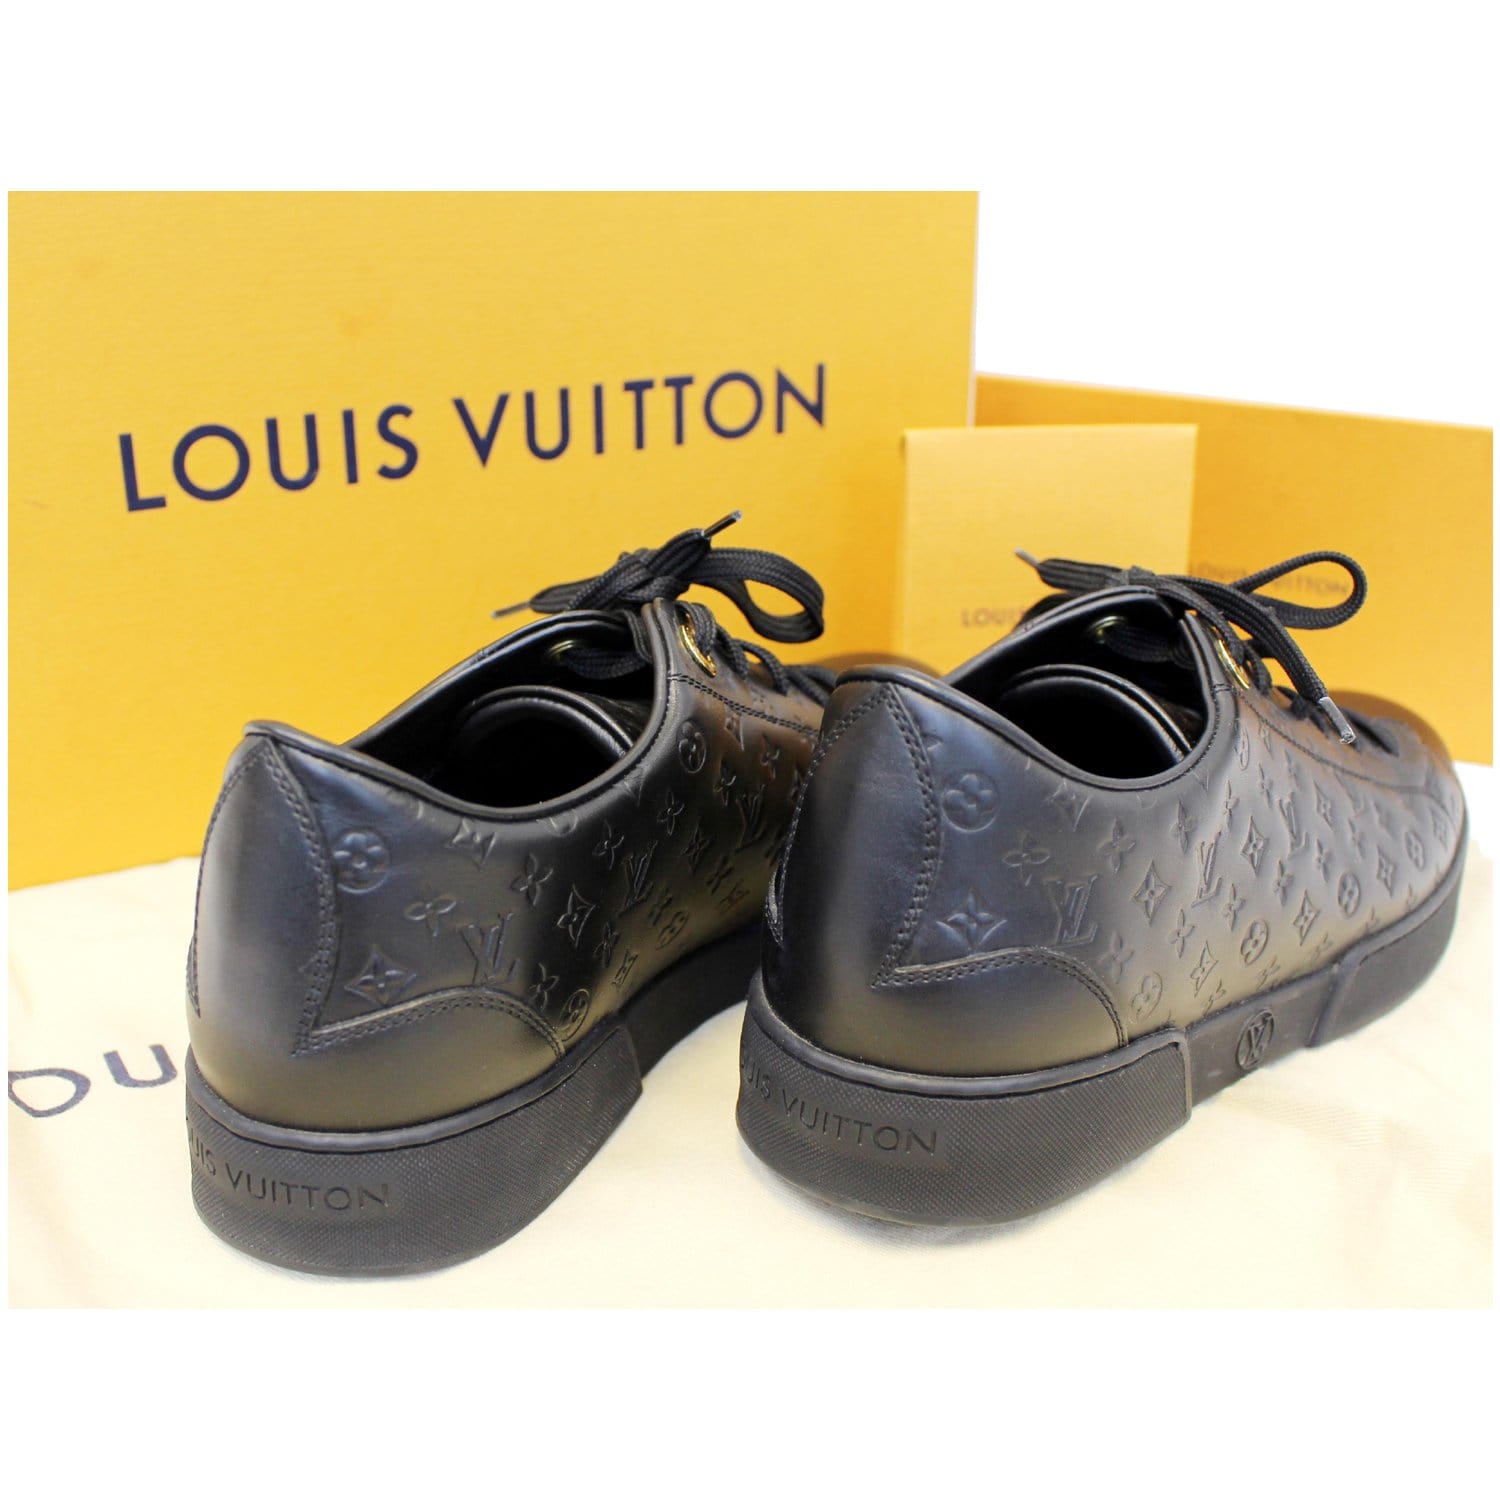 Une pâte à tartiner Louis Vuitton ça vaut quoi ? #fyp #pourtoi